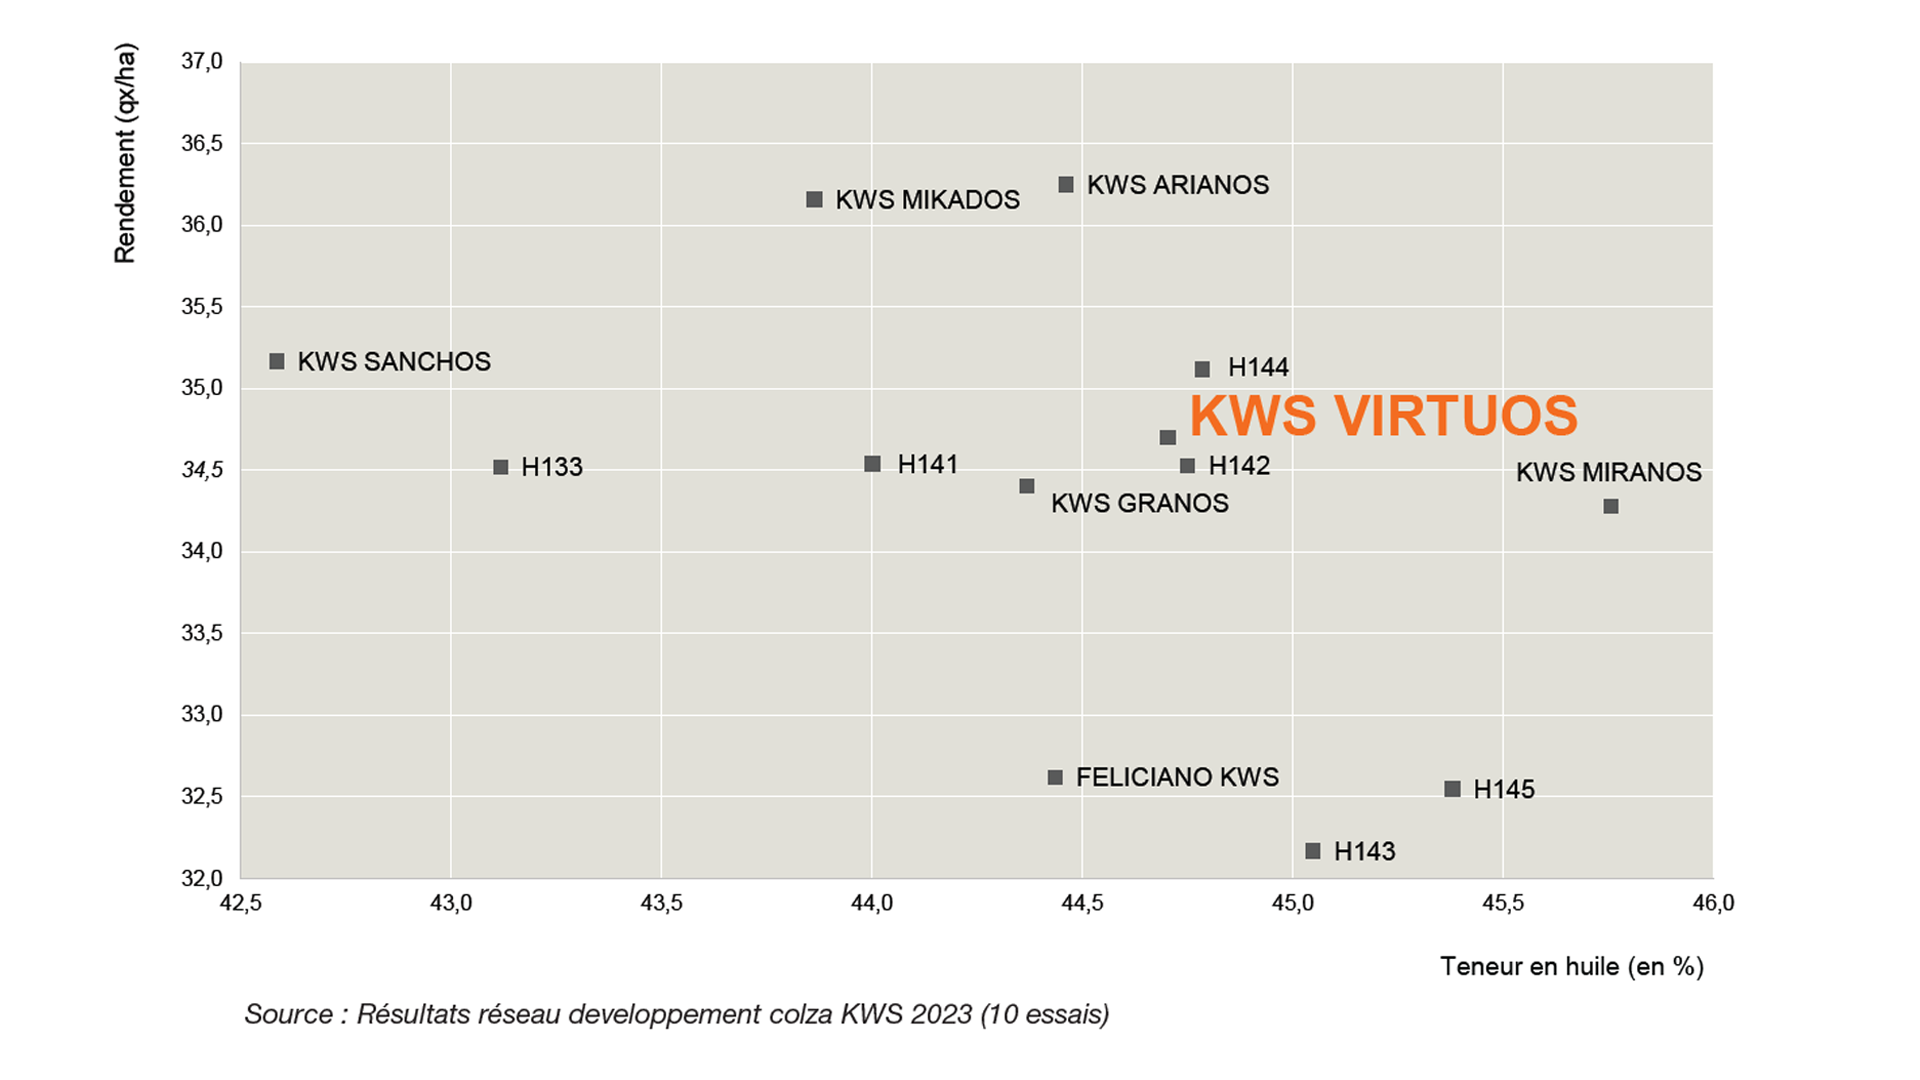 Source : Résultats réseau developpement colza KWS 2023 (10 essais)